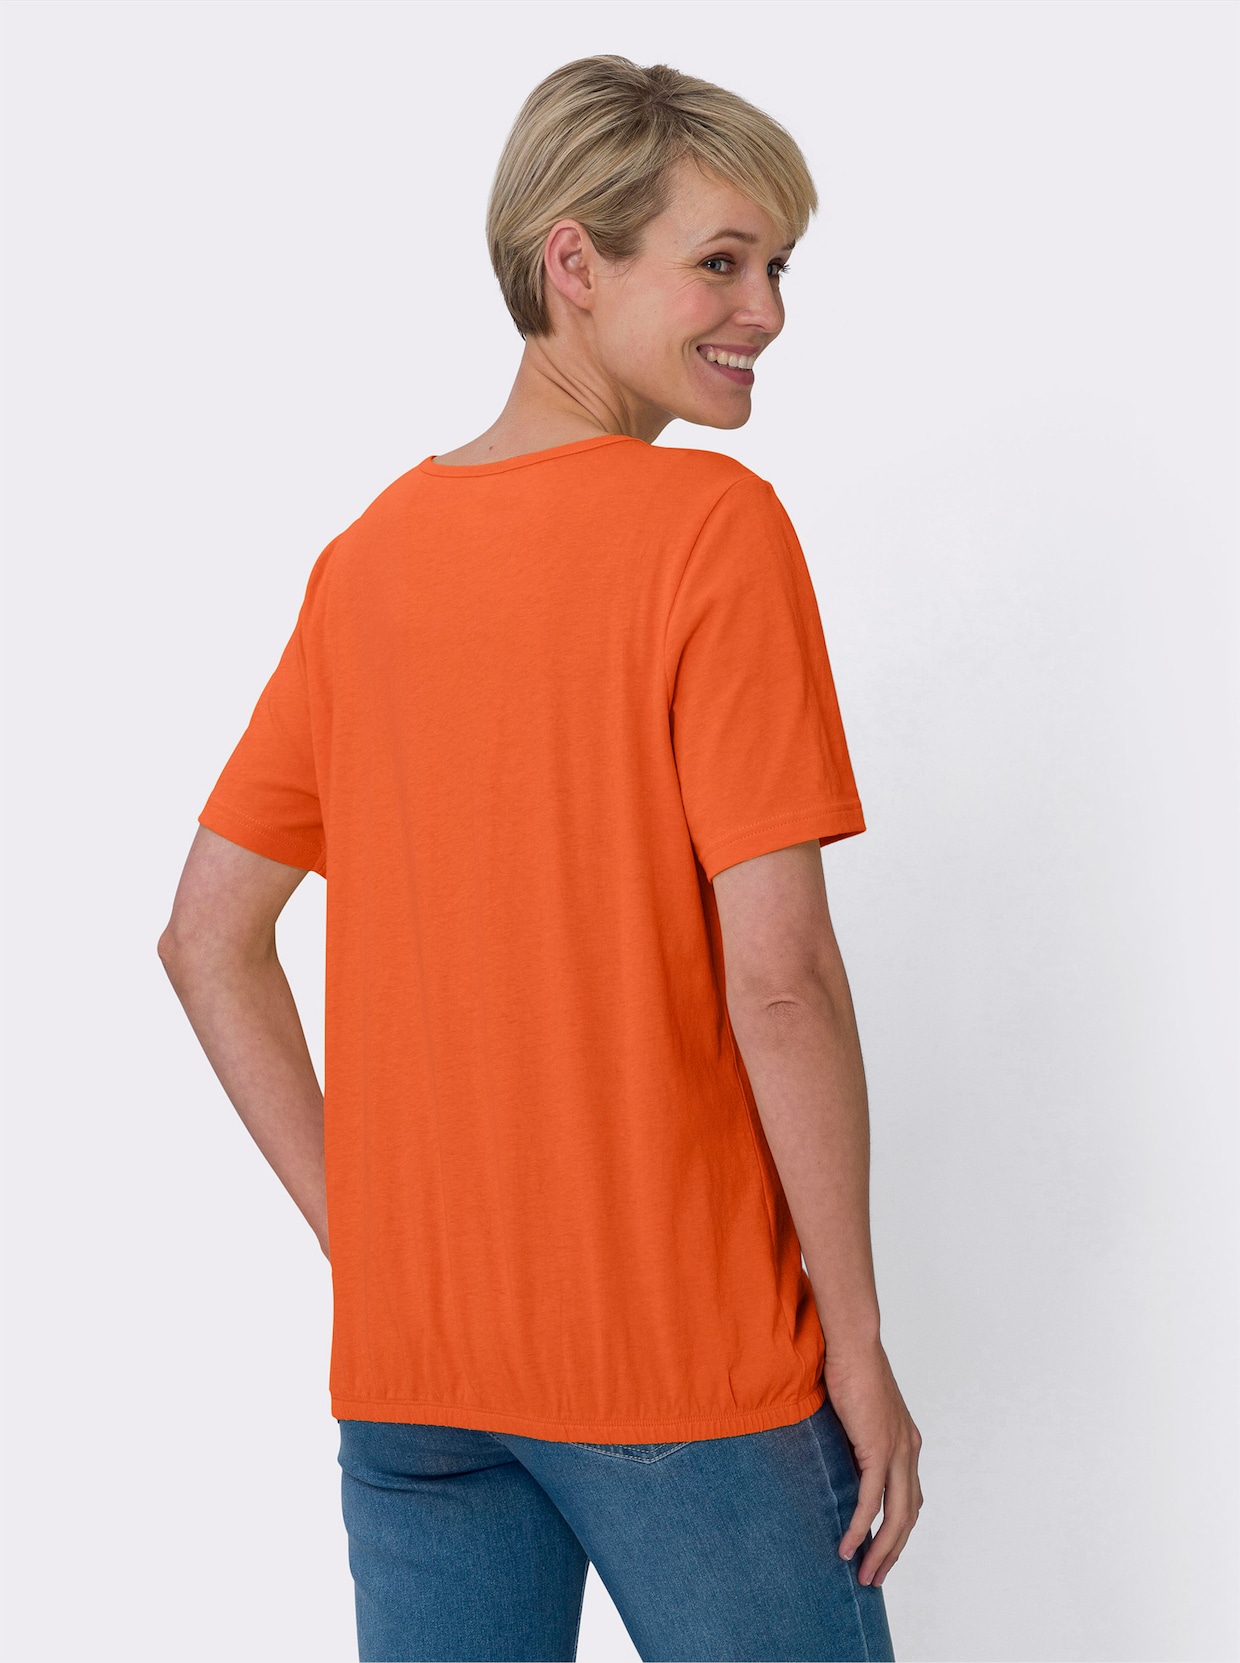 Kurzarm-Shirt - orange